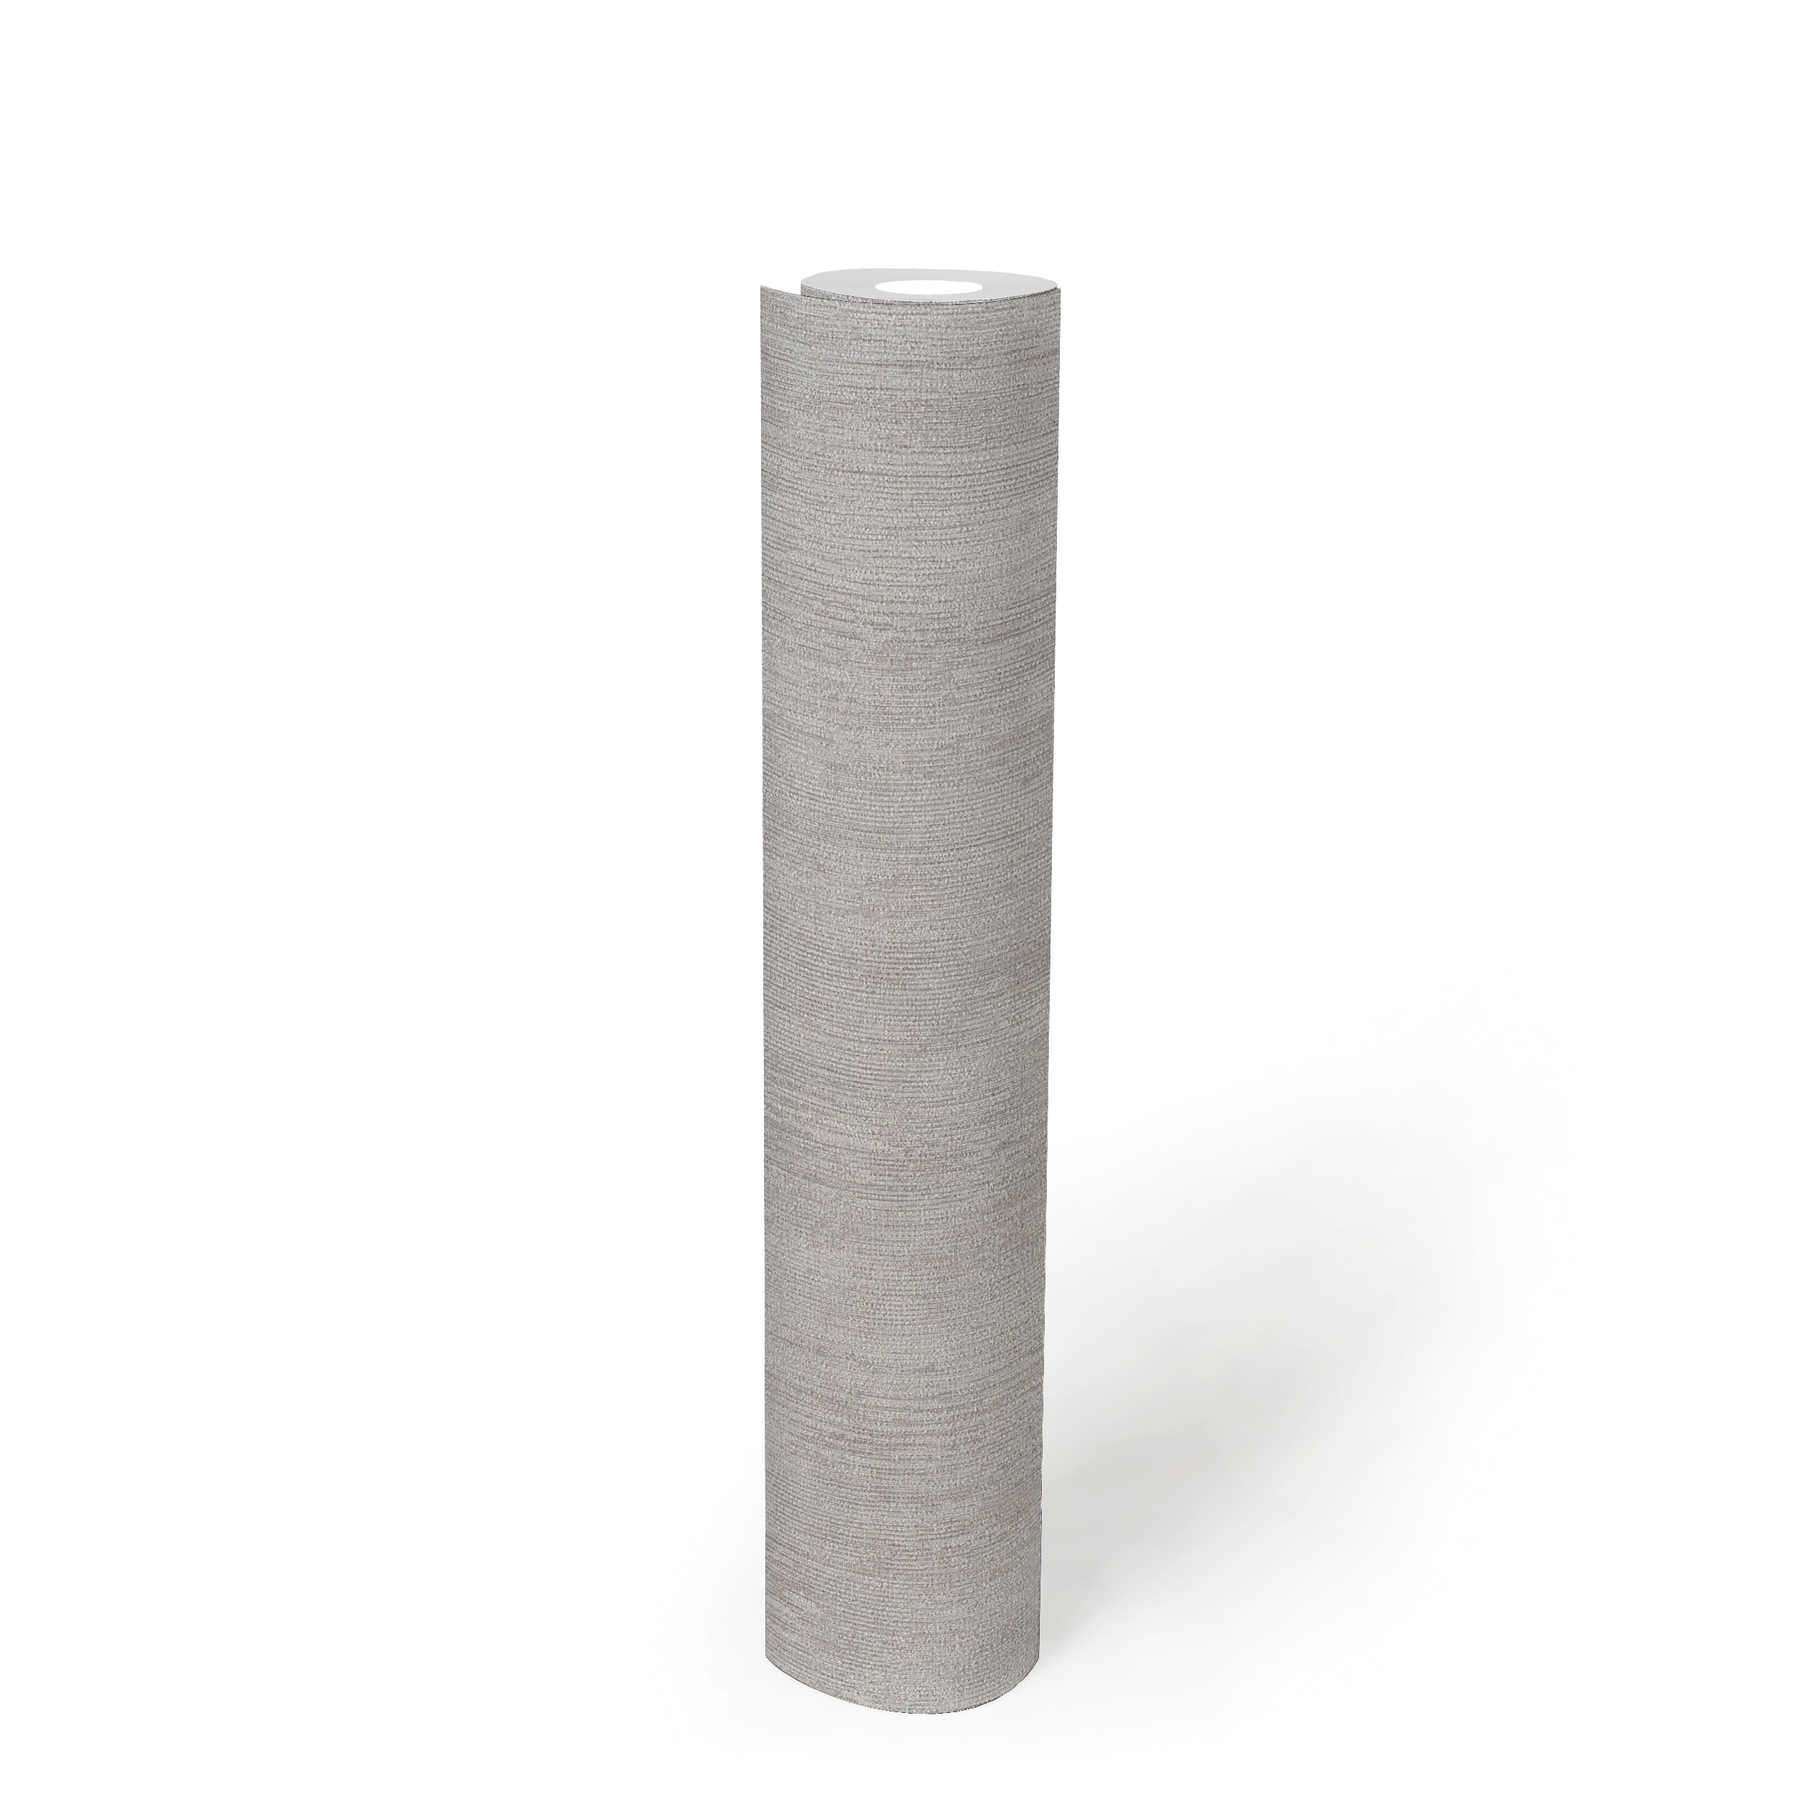             Unitapete Riefen-Design, Industrial Style – Grau, Weiß
        